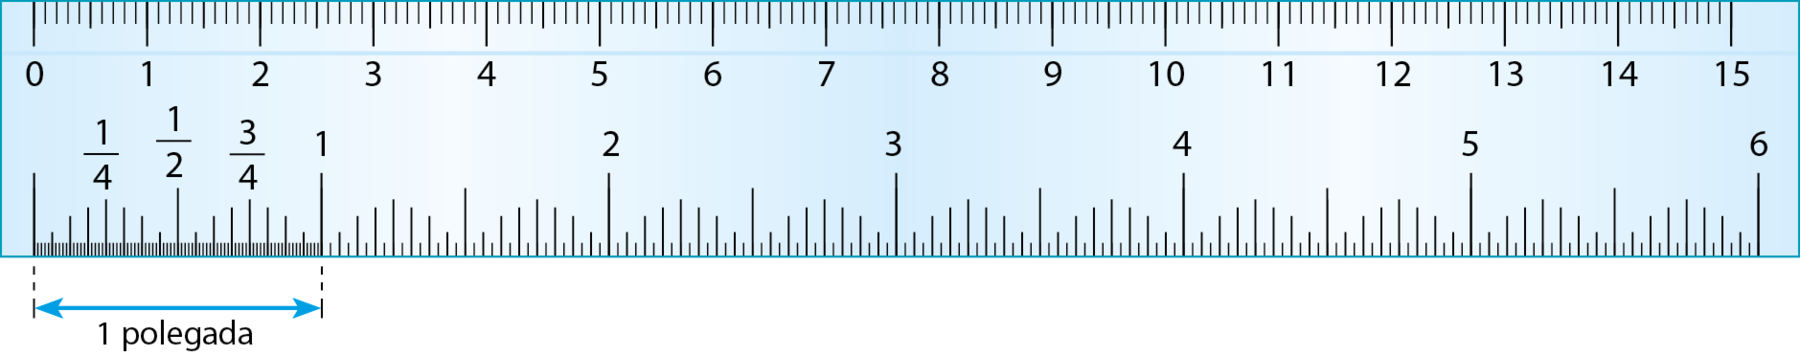 Ilustração.
Régua azul de 15 centímetros.
Na parte de cima da régua ela esta graduada em milímetros, com os números que indicam os centímetros representados.
Na parte de baixo, a régua está graduada em polegadas de 1 até 6, com os números um quarto, meio e três quartos representados.
Abaixo da régua, linha azul com uma flecha em cada ponta, representando a medida de 1 polegada.